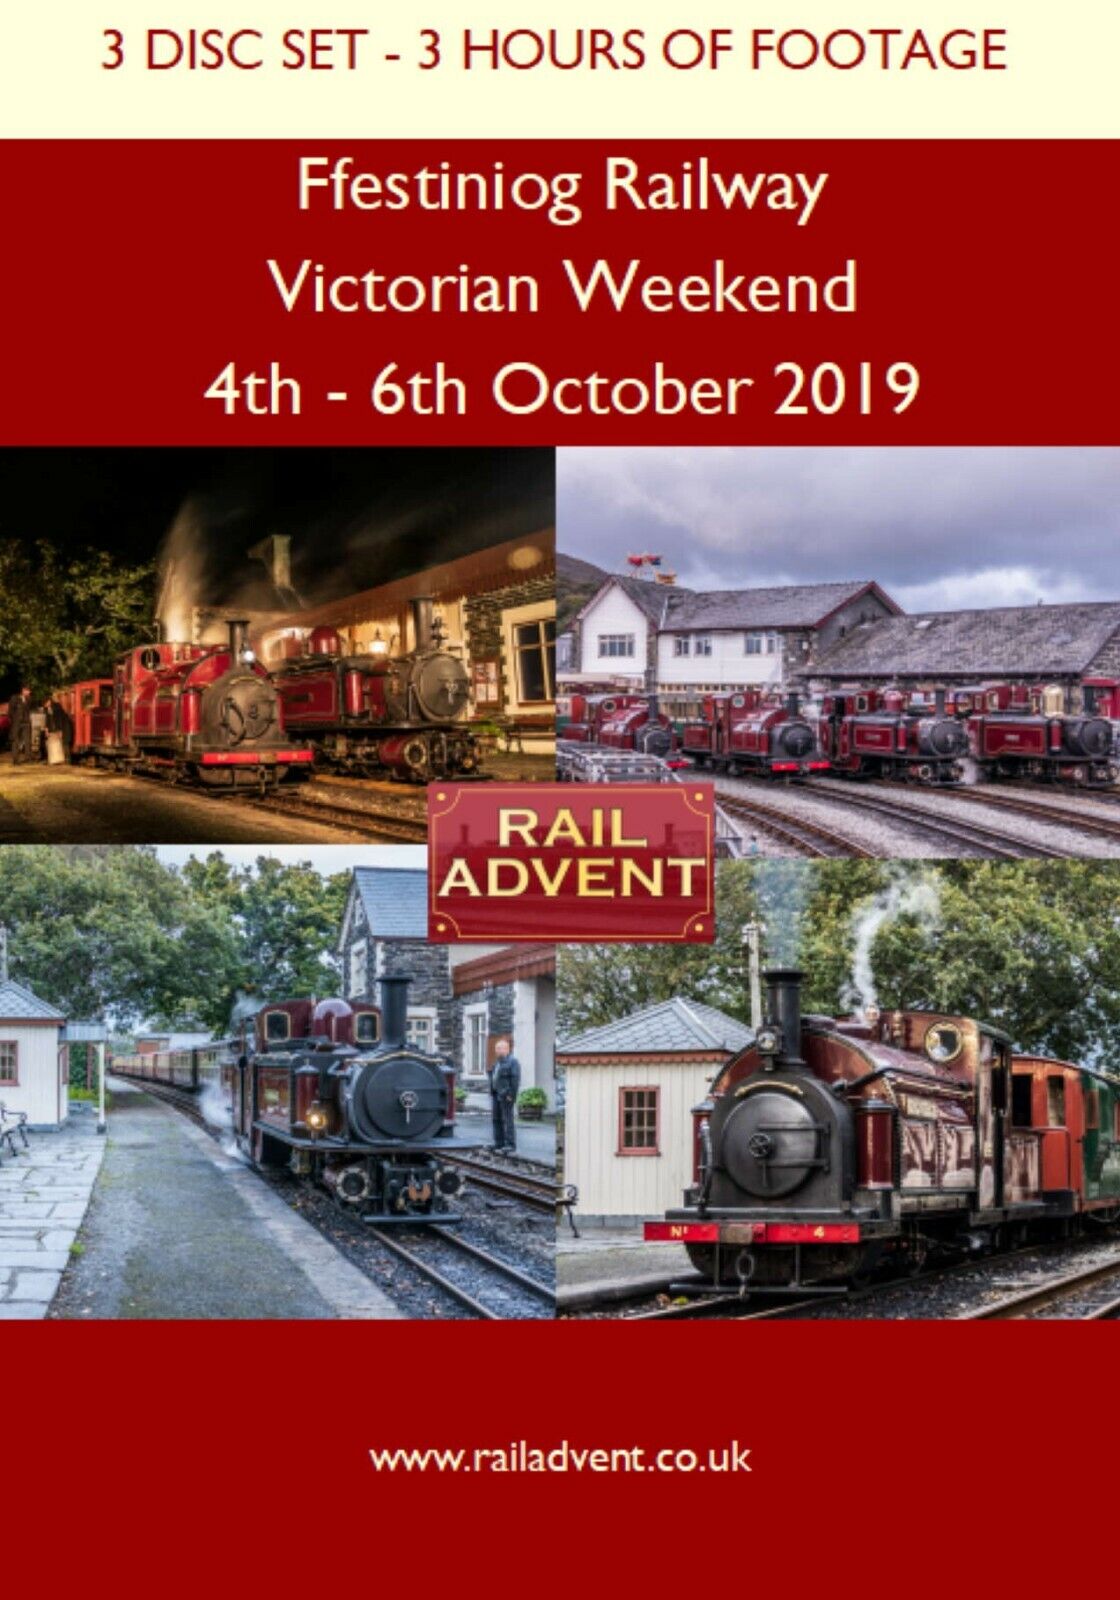 Railway DVD - Ffestiniog Railway - Victorian Weekend - 3 Disc Set